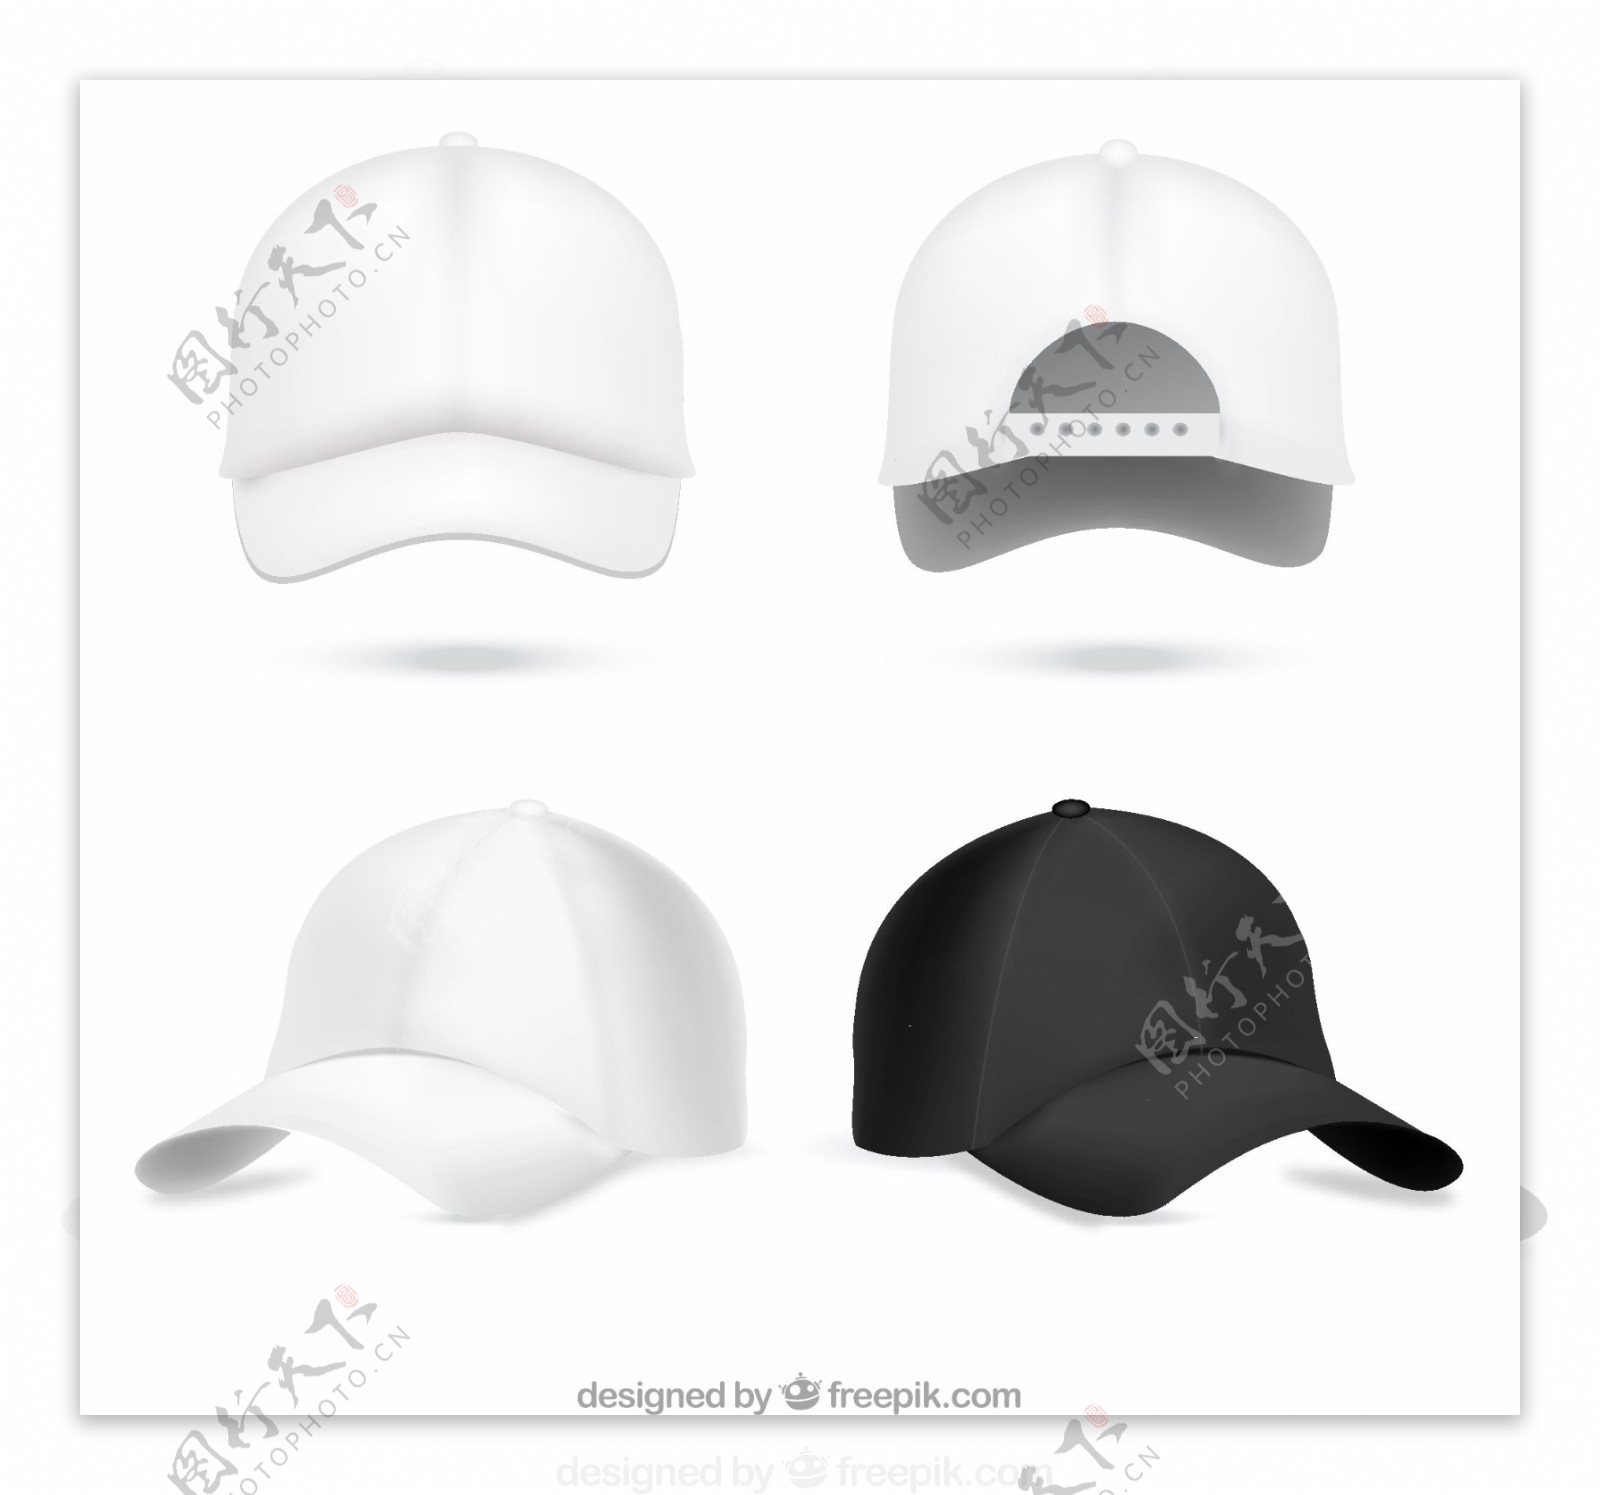 4款棒球帽设计矢量素材